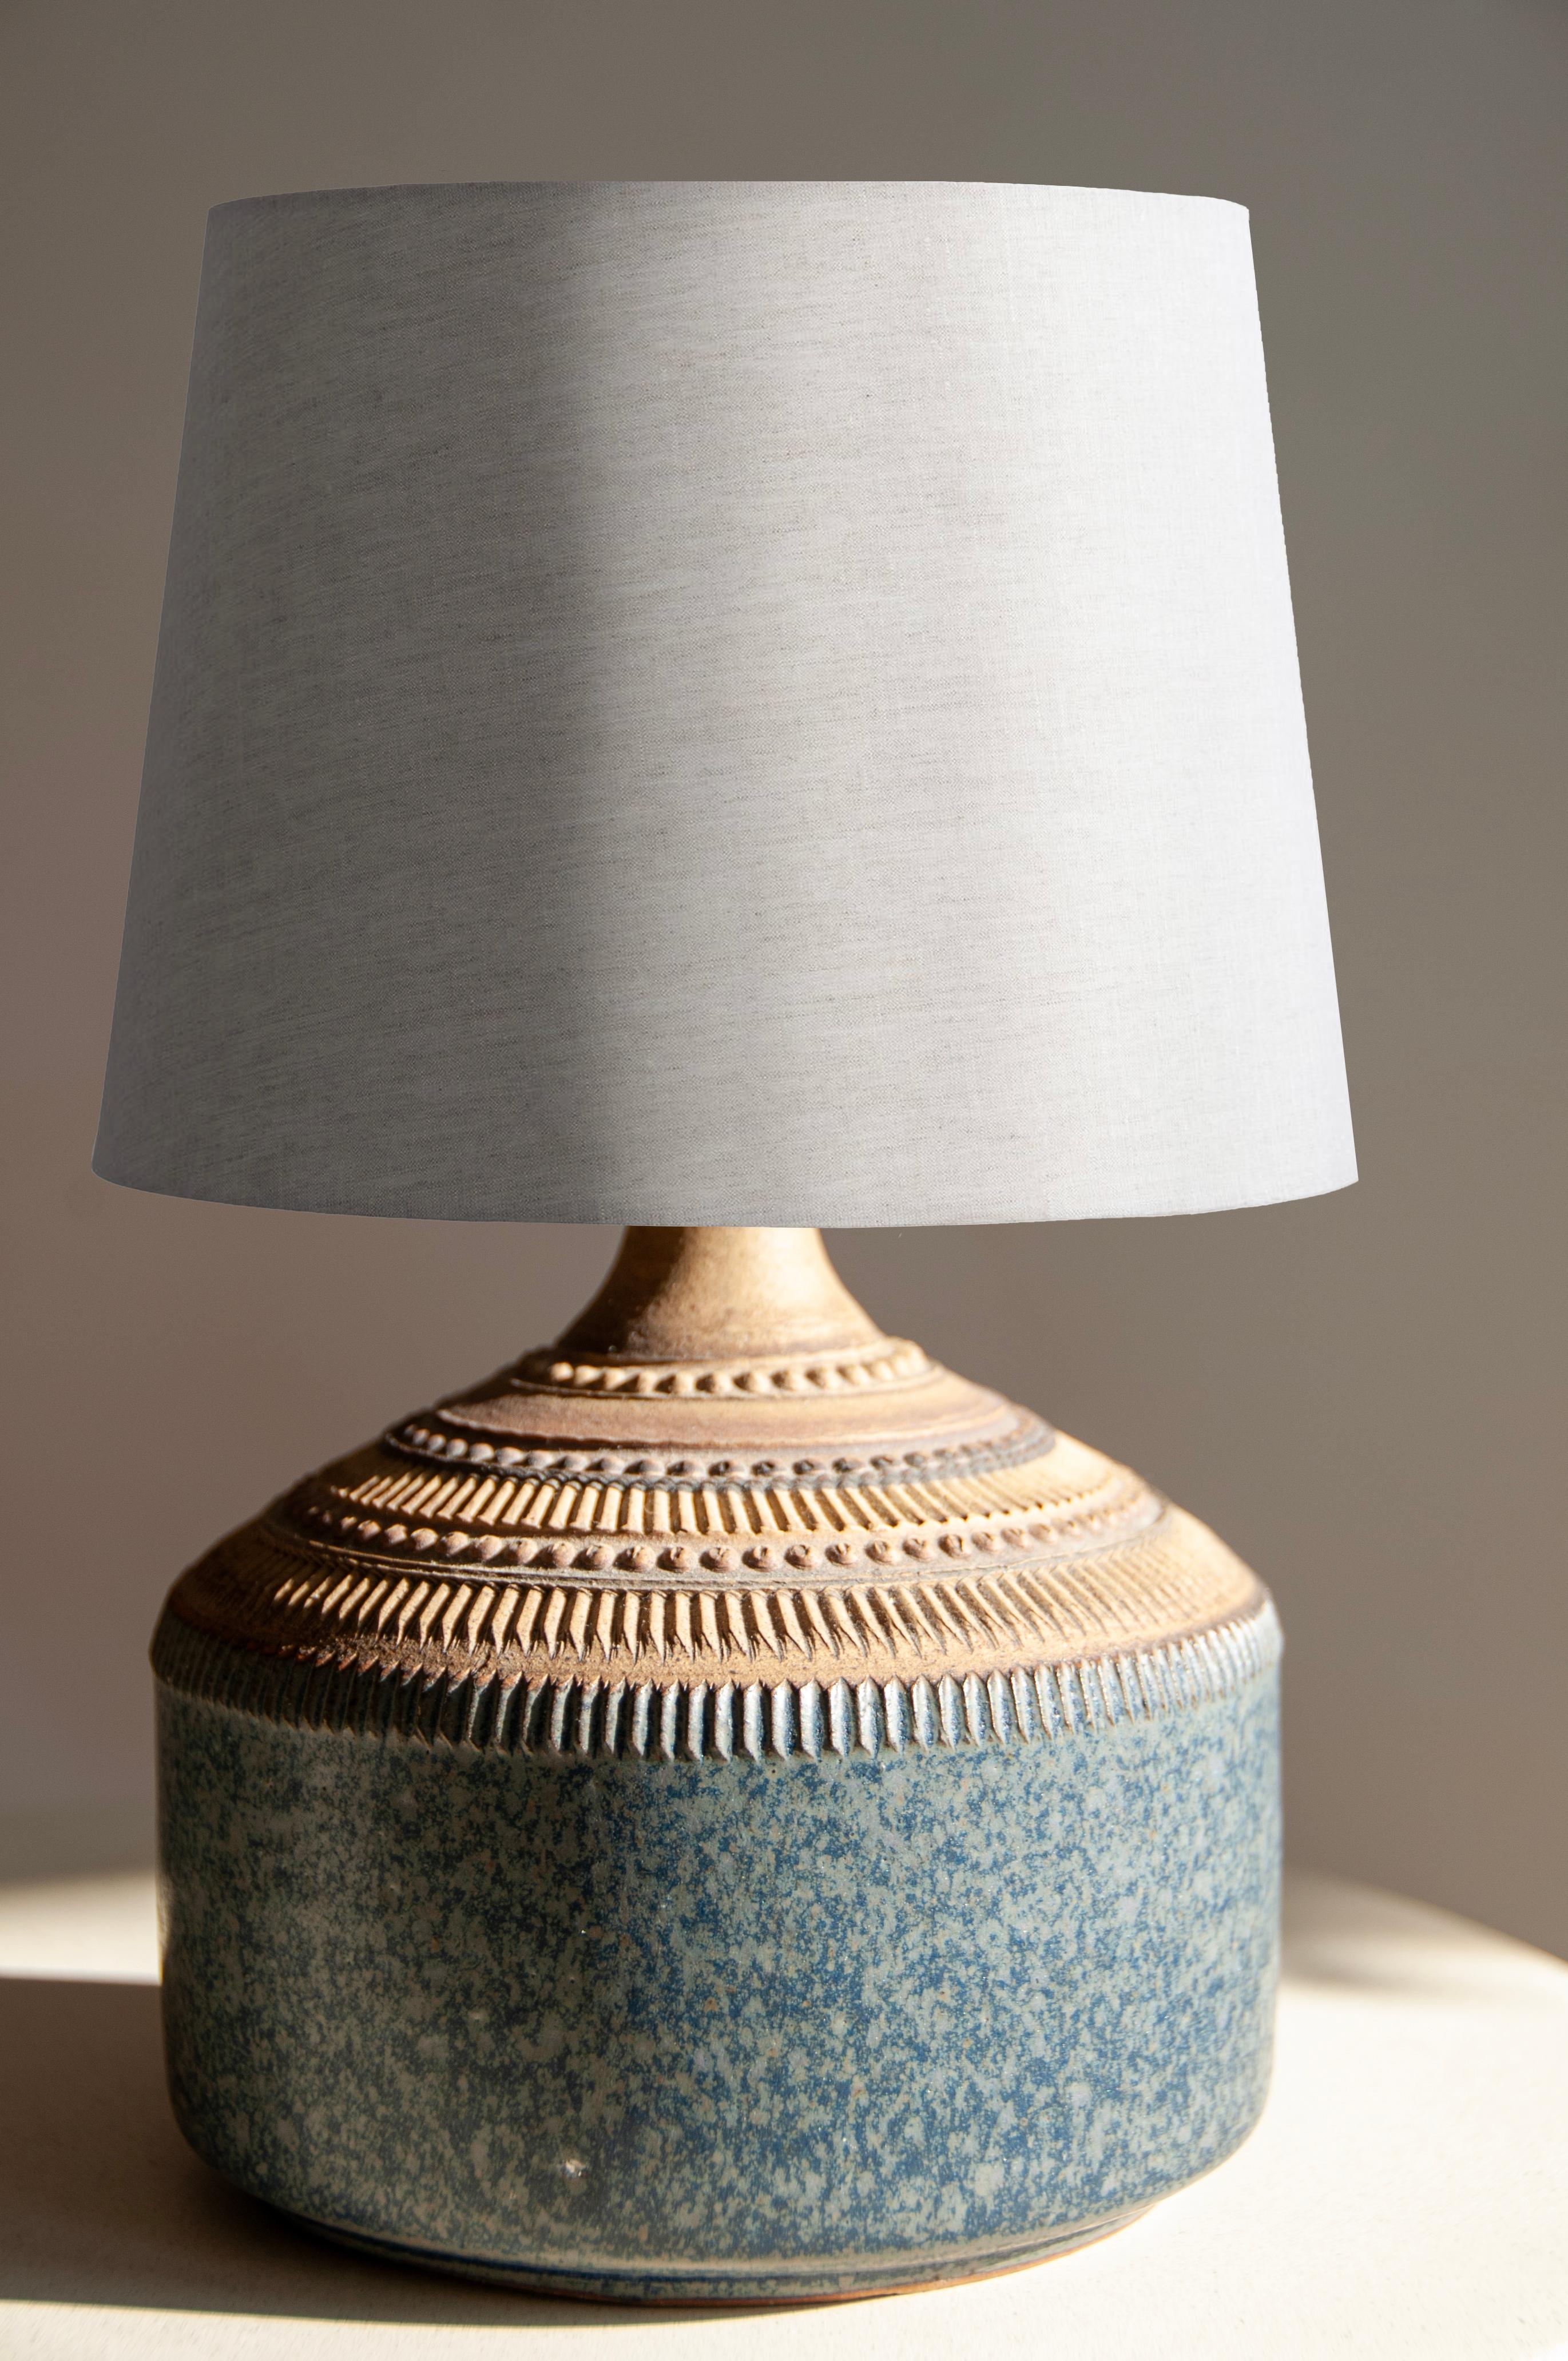 Explorez une pièce exceptionnelle d'éclairage vintage avec cette lampe en céramique faite à la main par le fabricant emblématique Klase Keramik Höganäs, fabriquée avec amour et savoir-faire dans les années 1960 !

Description du produit :
Cette